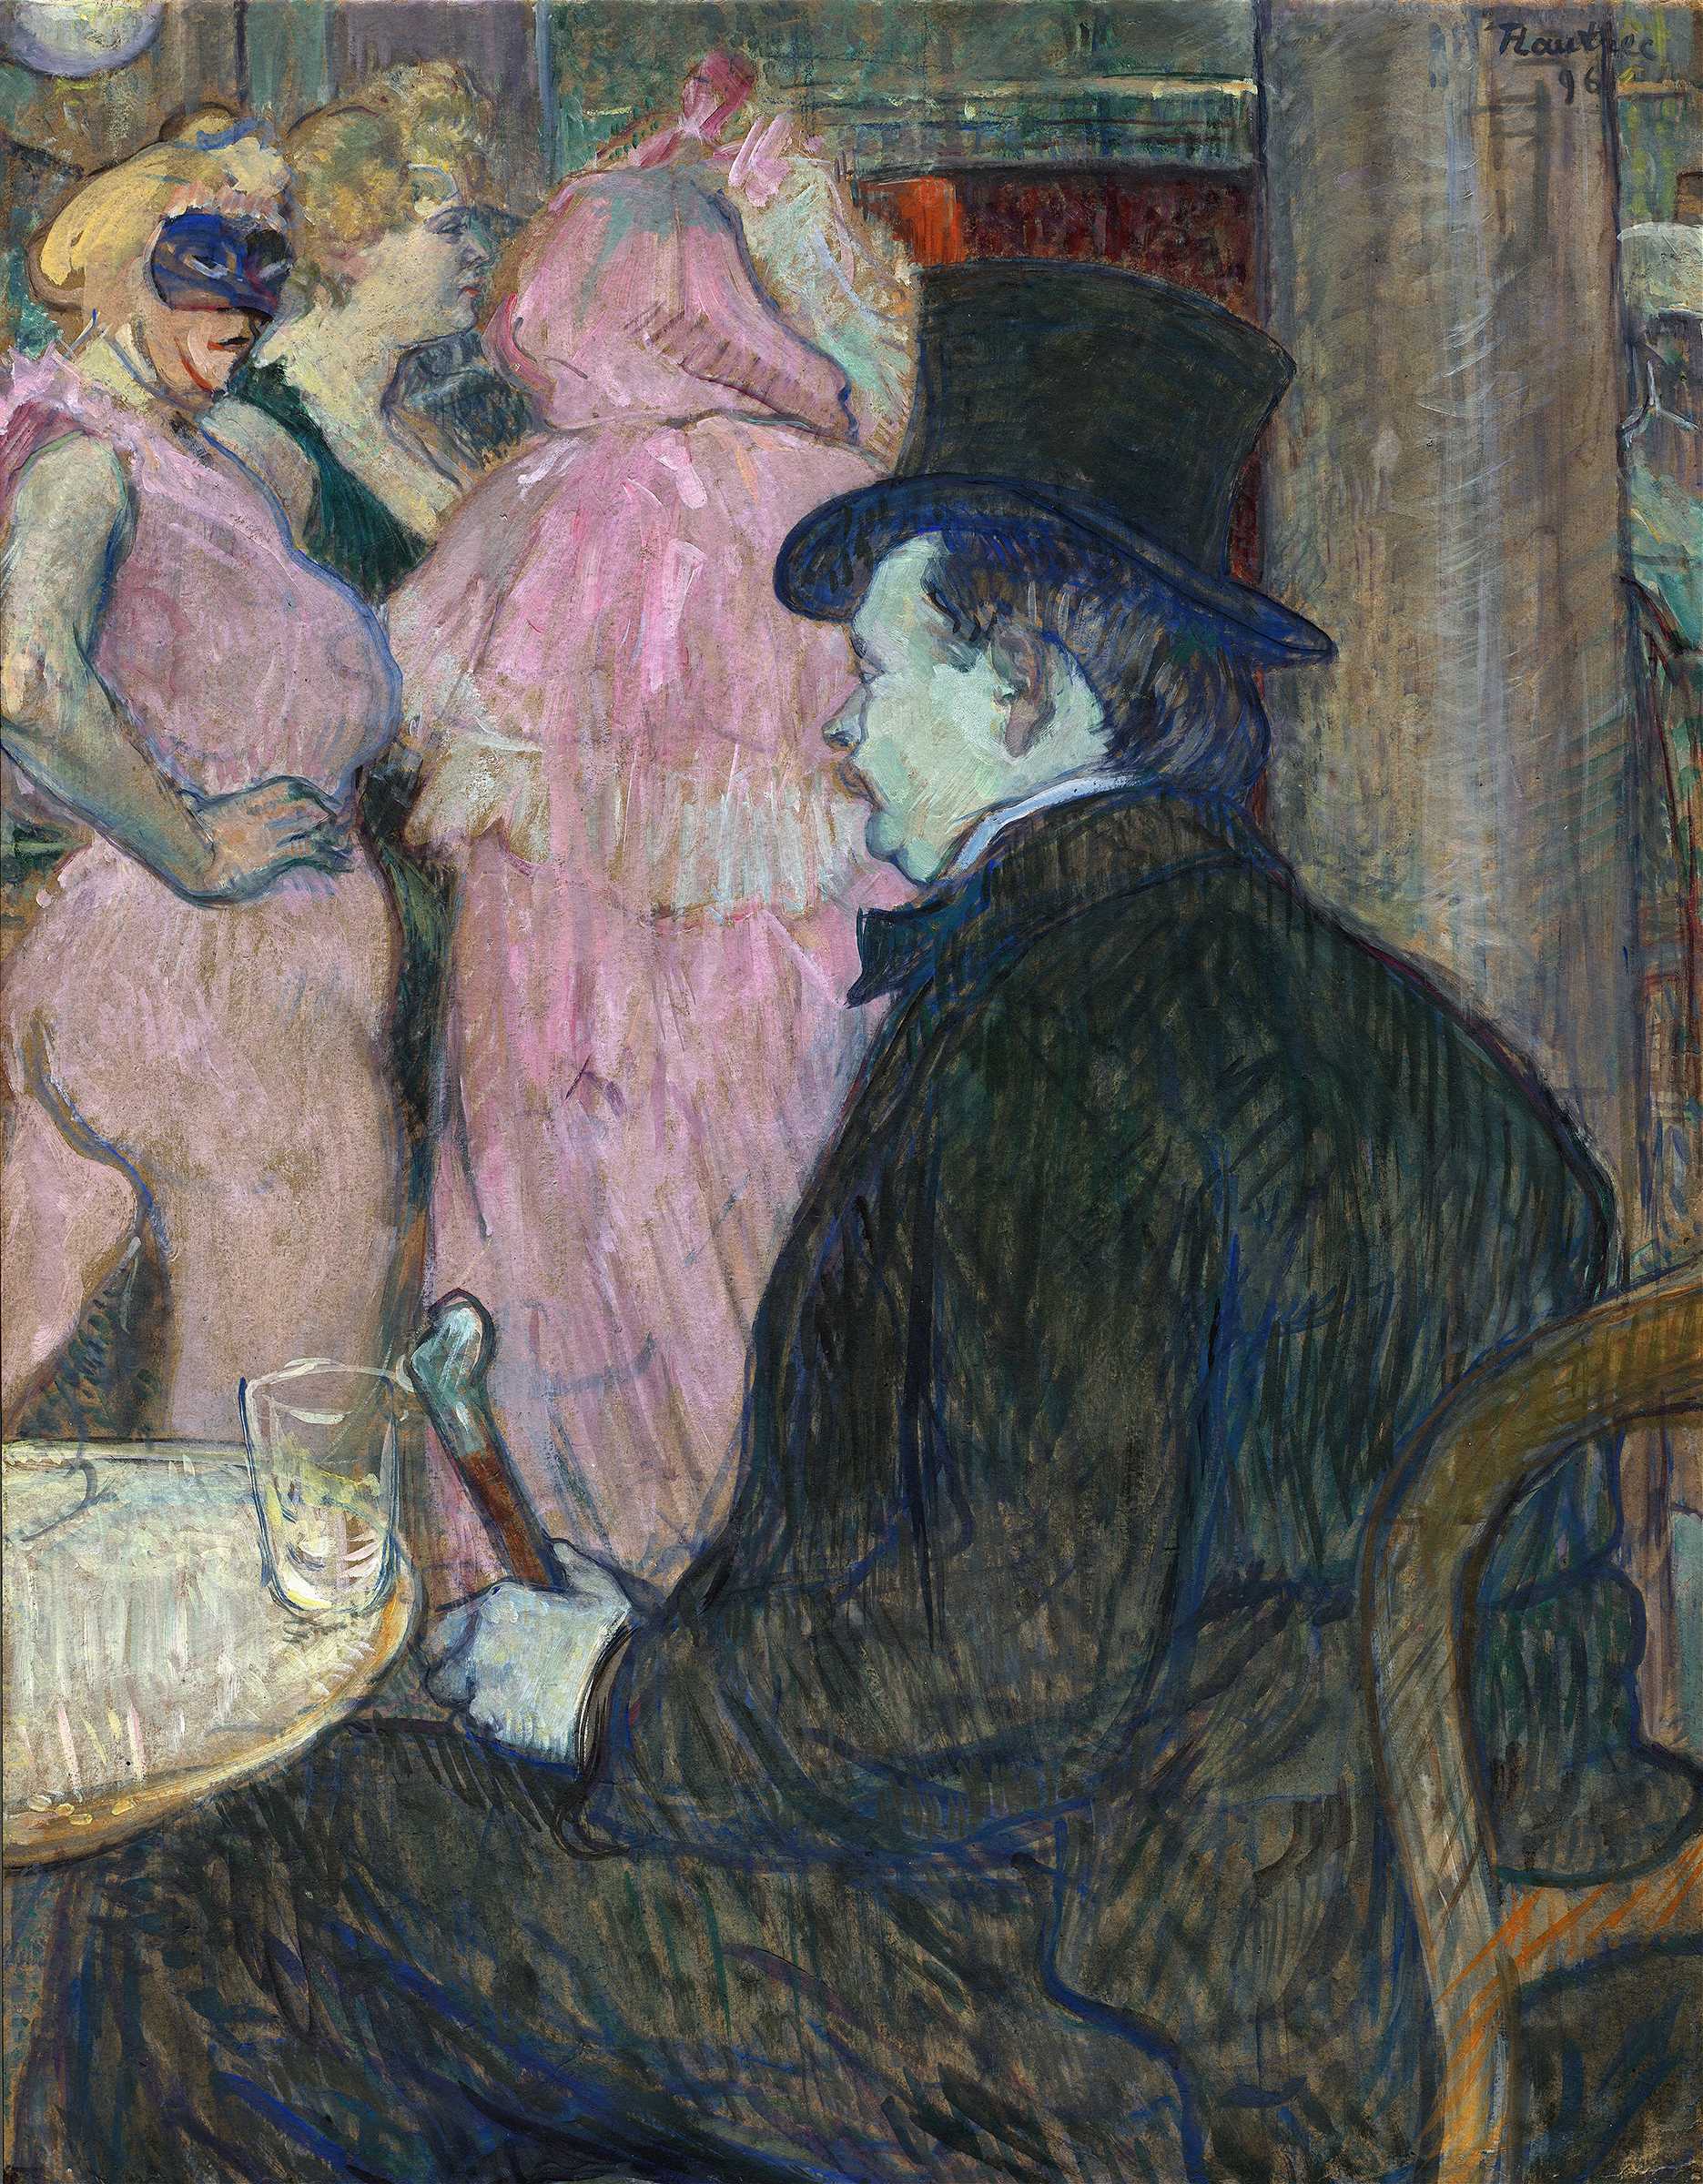 Find out more about Henri de Toulouse-Lautrec - Maxime Dethomas